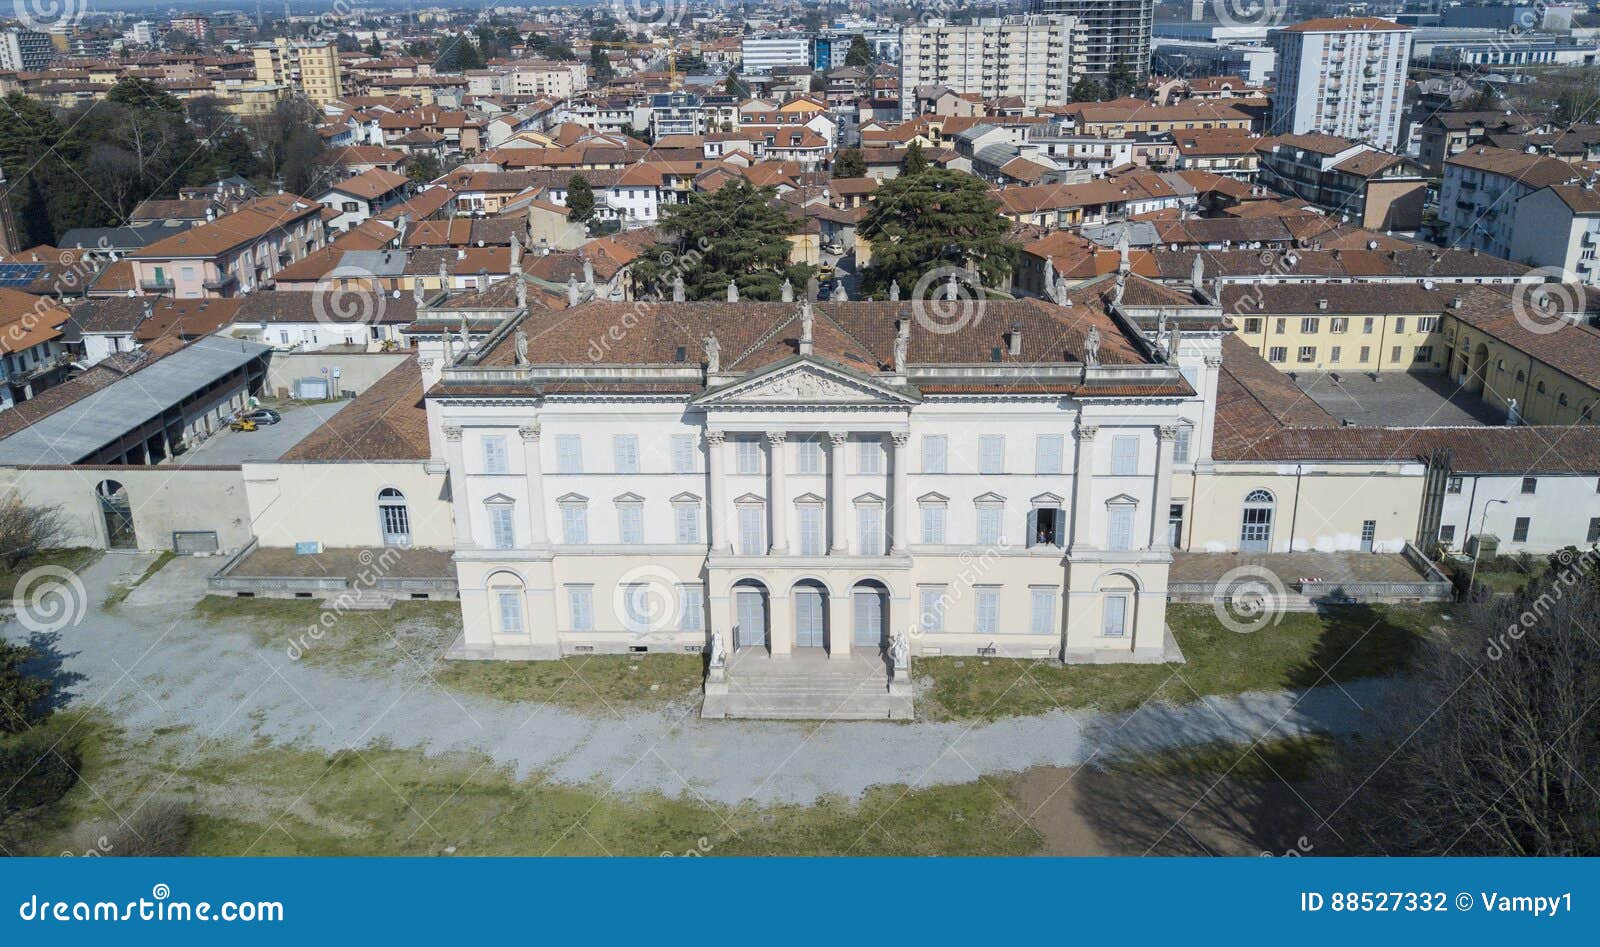 villa cusani tittoni traversi, panoramic view, aerial view, desio, monza and brianza, italy